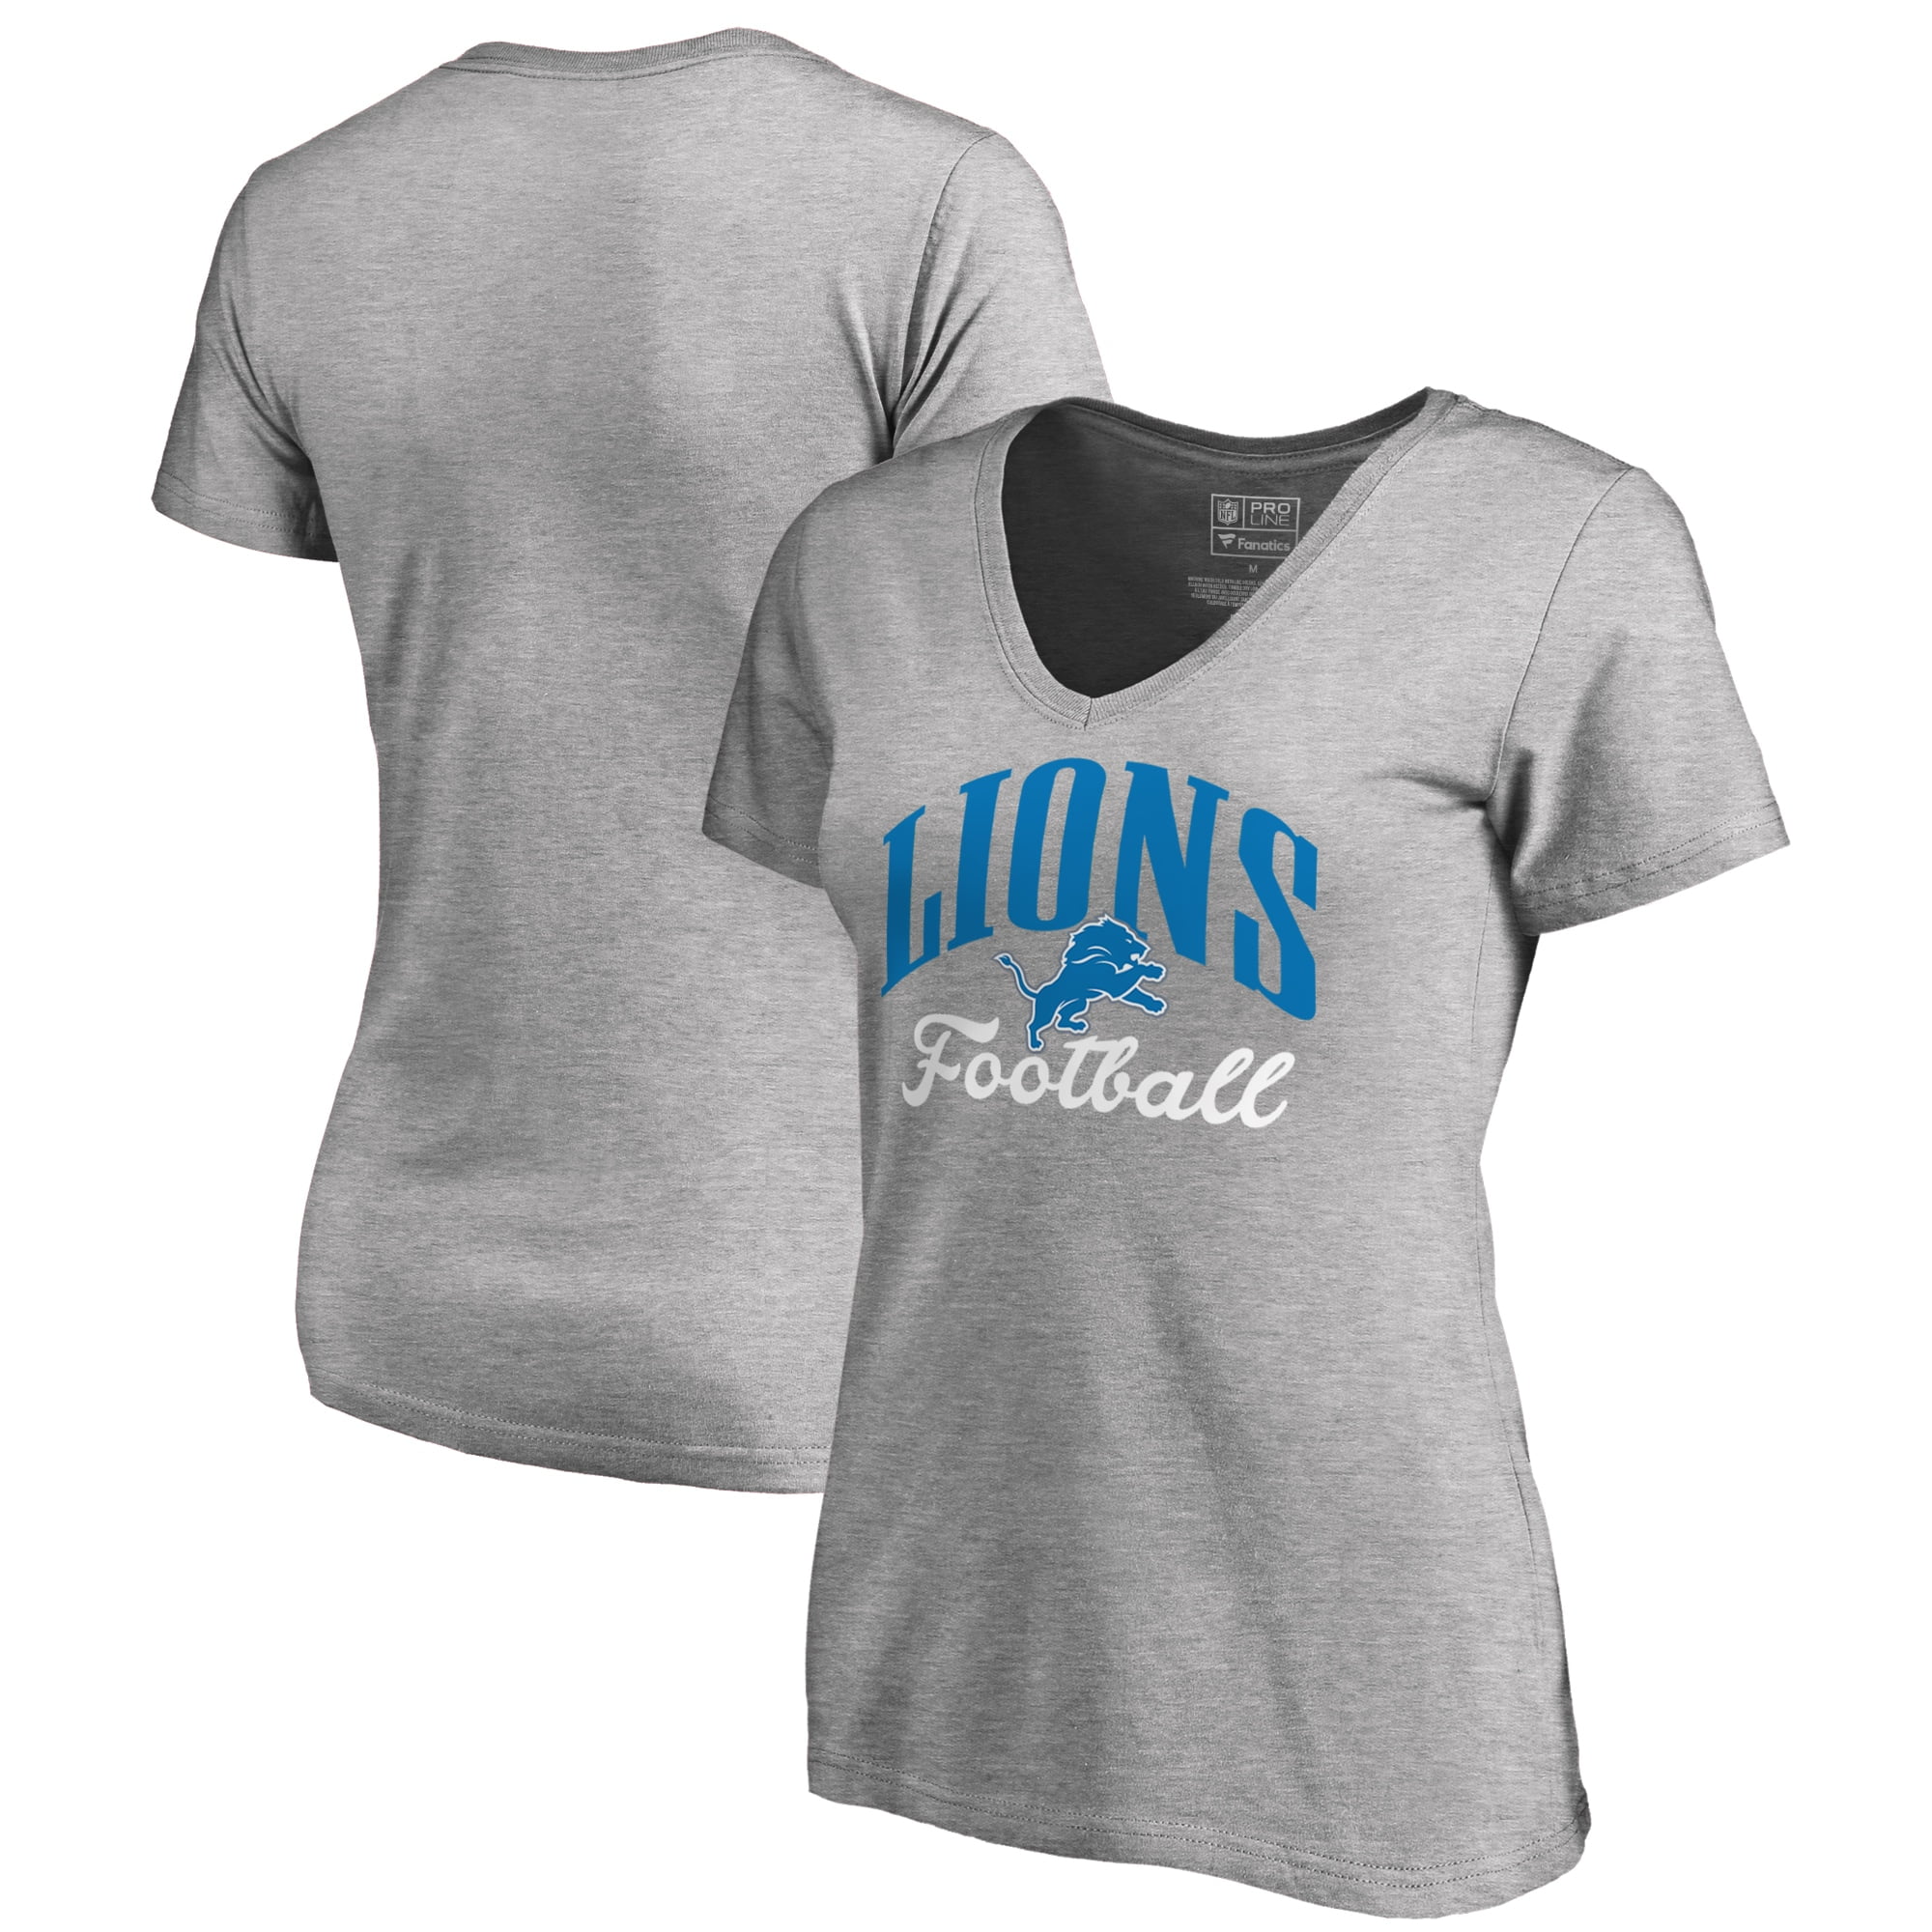 plus size women's detroit lions shirts